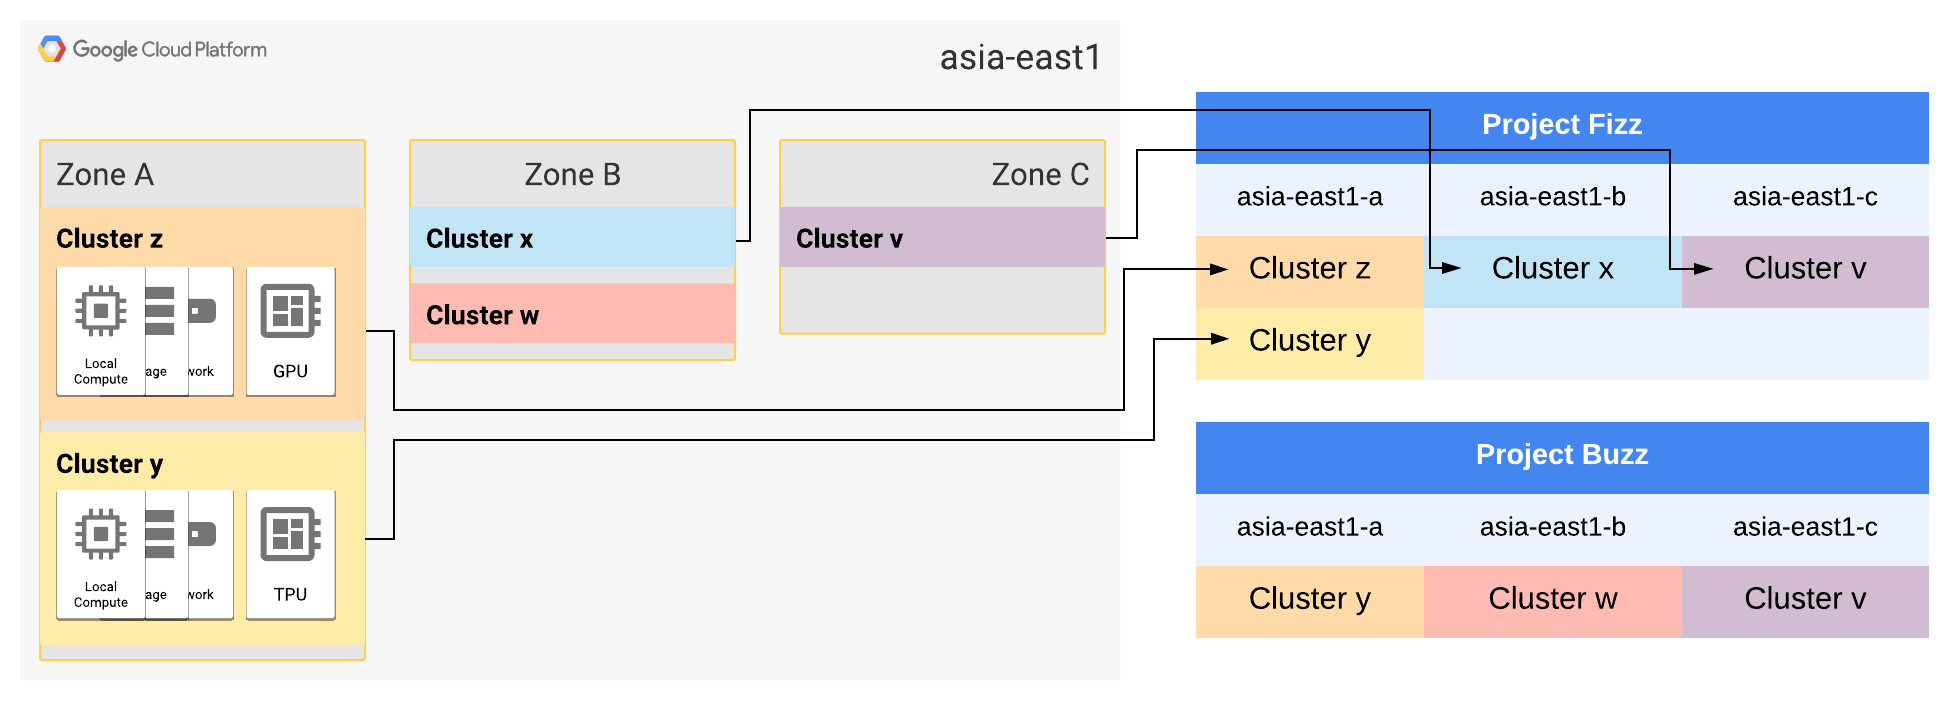 Zona A dan B asia-east1 masing-masing telah diperluas menjadi dua klaster.